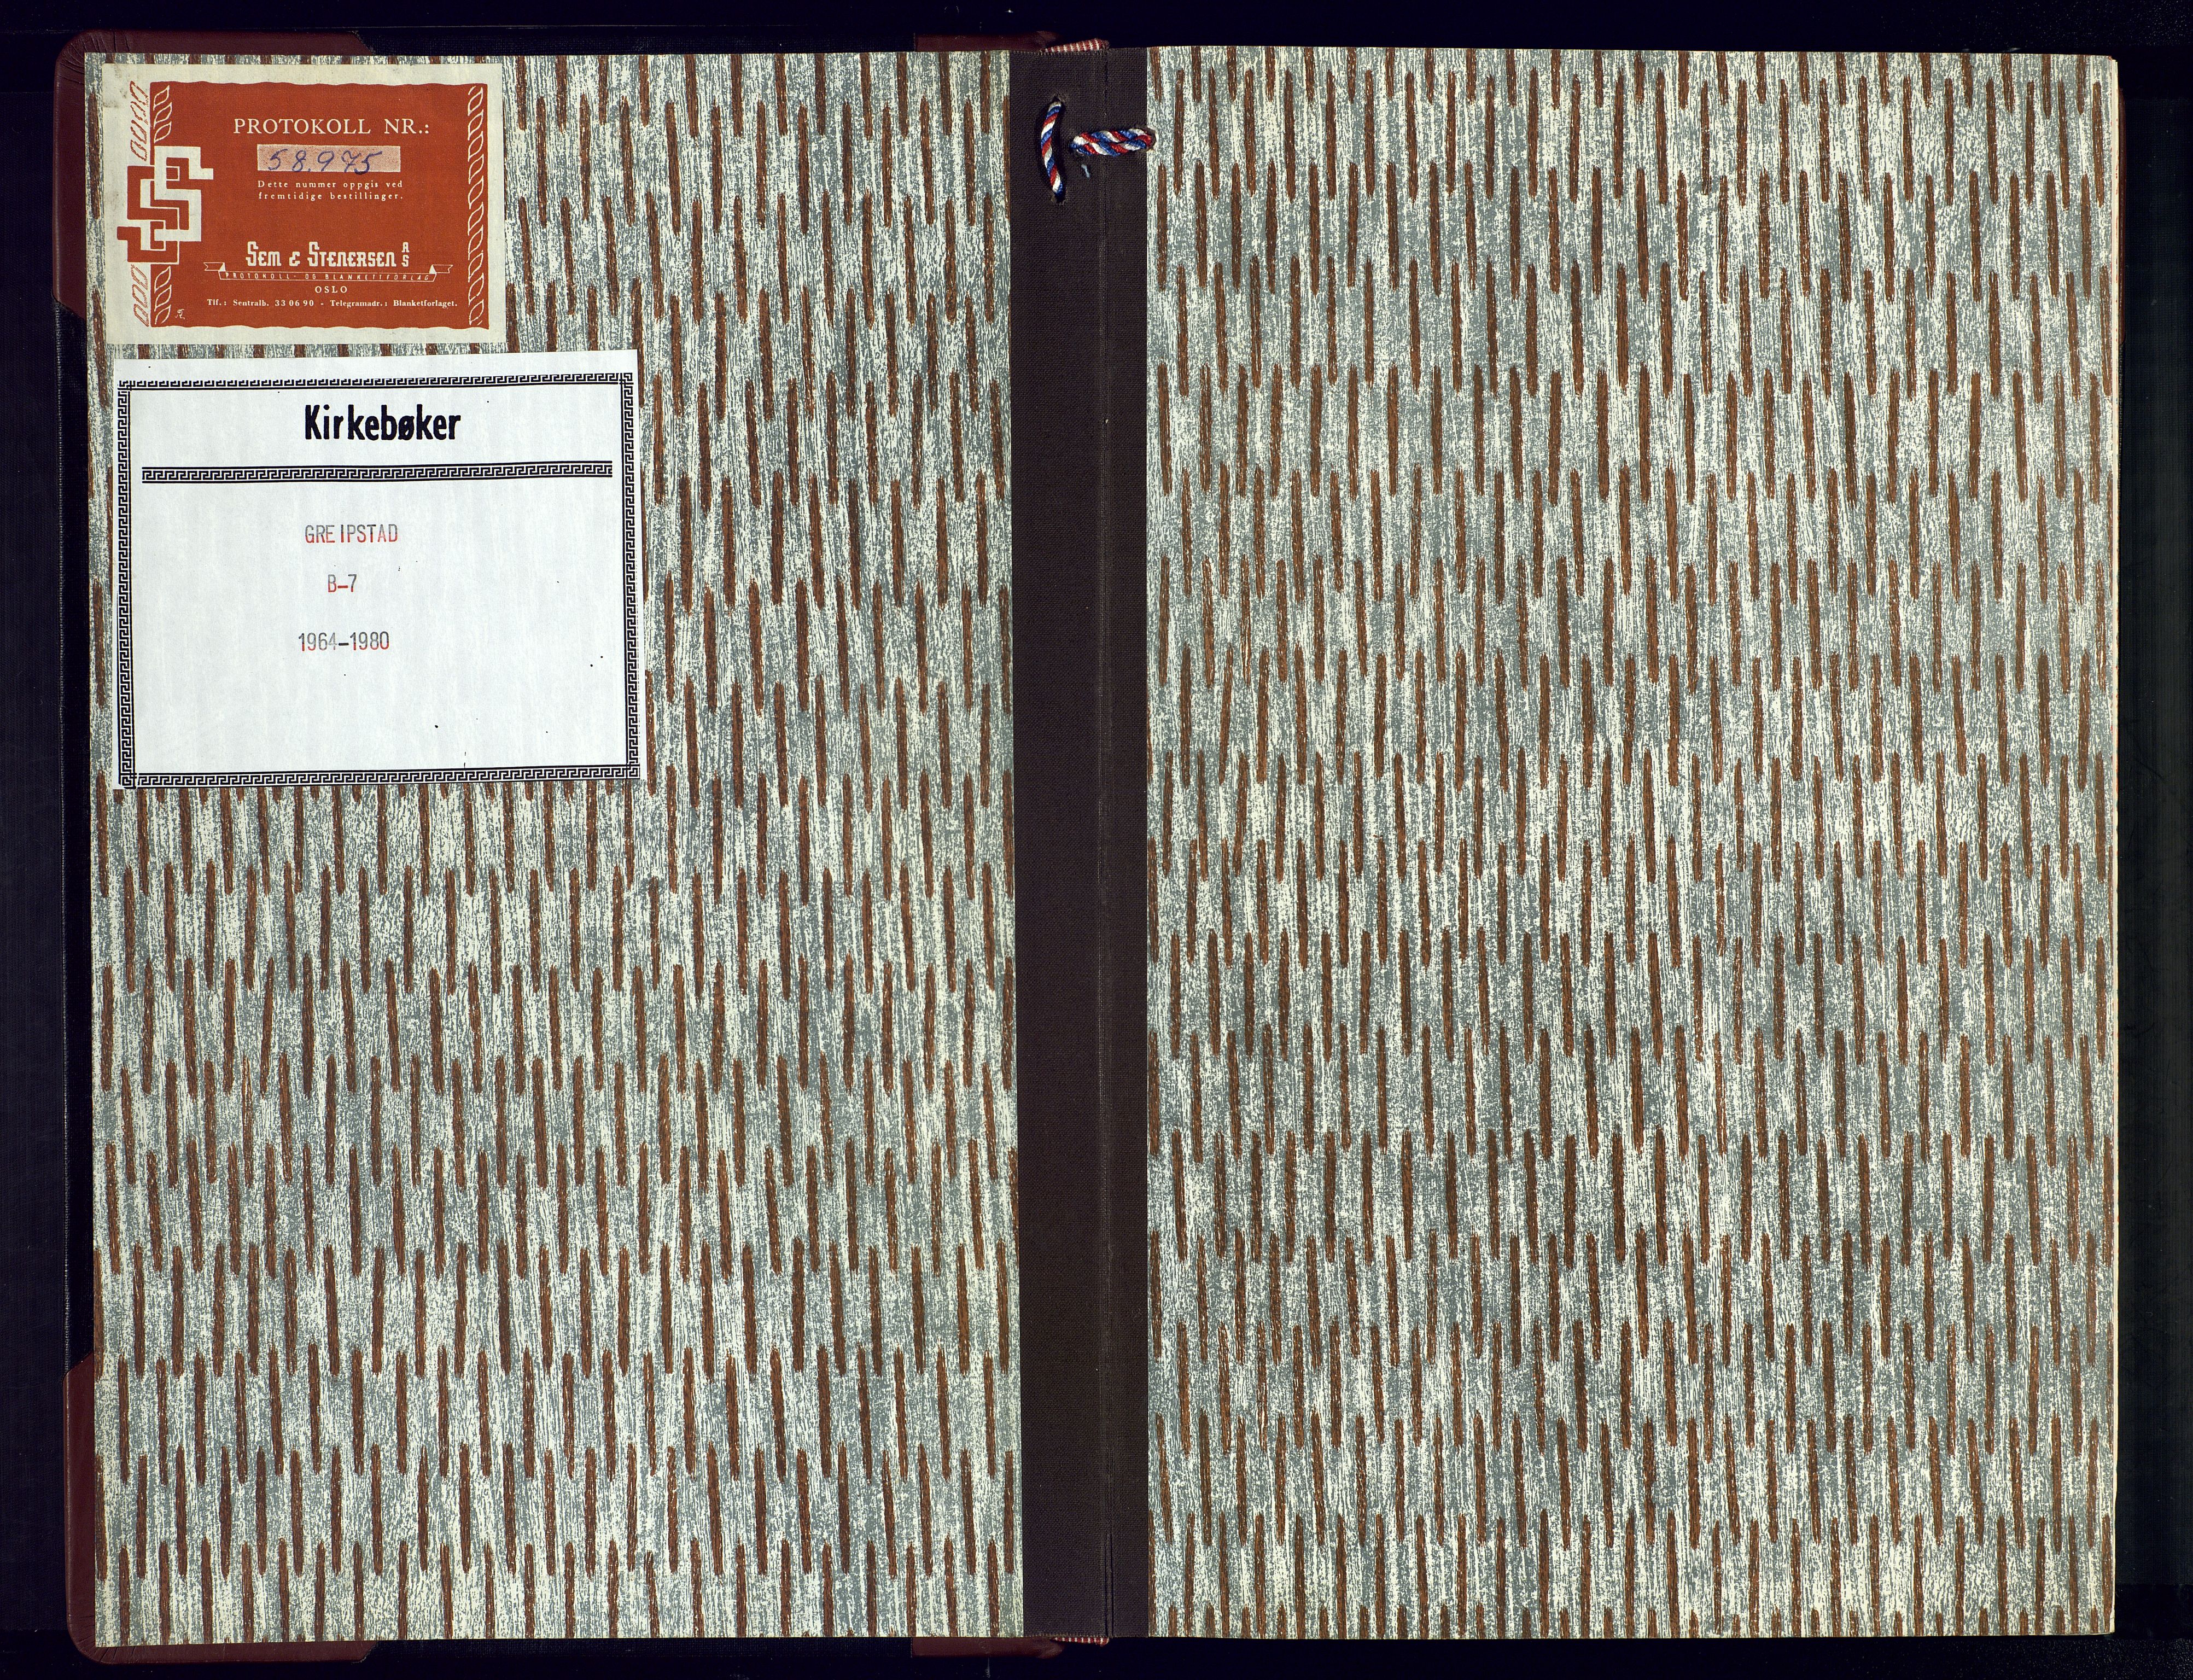 Søgne sokneprestkontor, SAK/1111-0037/F/Fb/Fba/L0007: Klokkerbok nr. B-7, 1964-1980